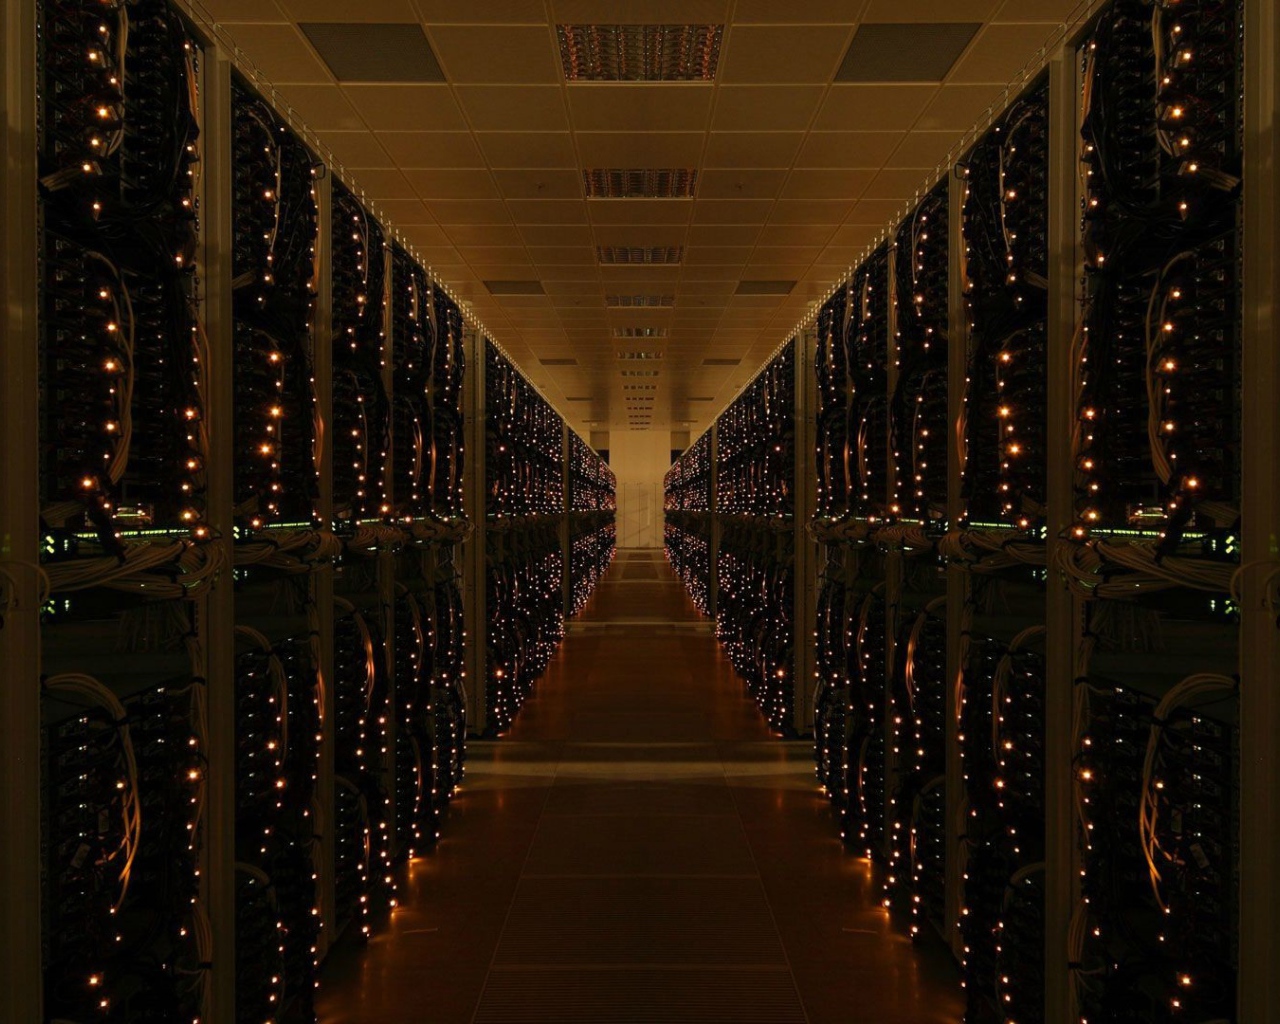 Rack servers in the data center